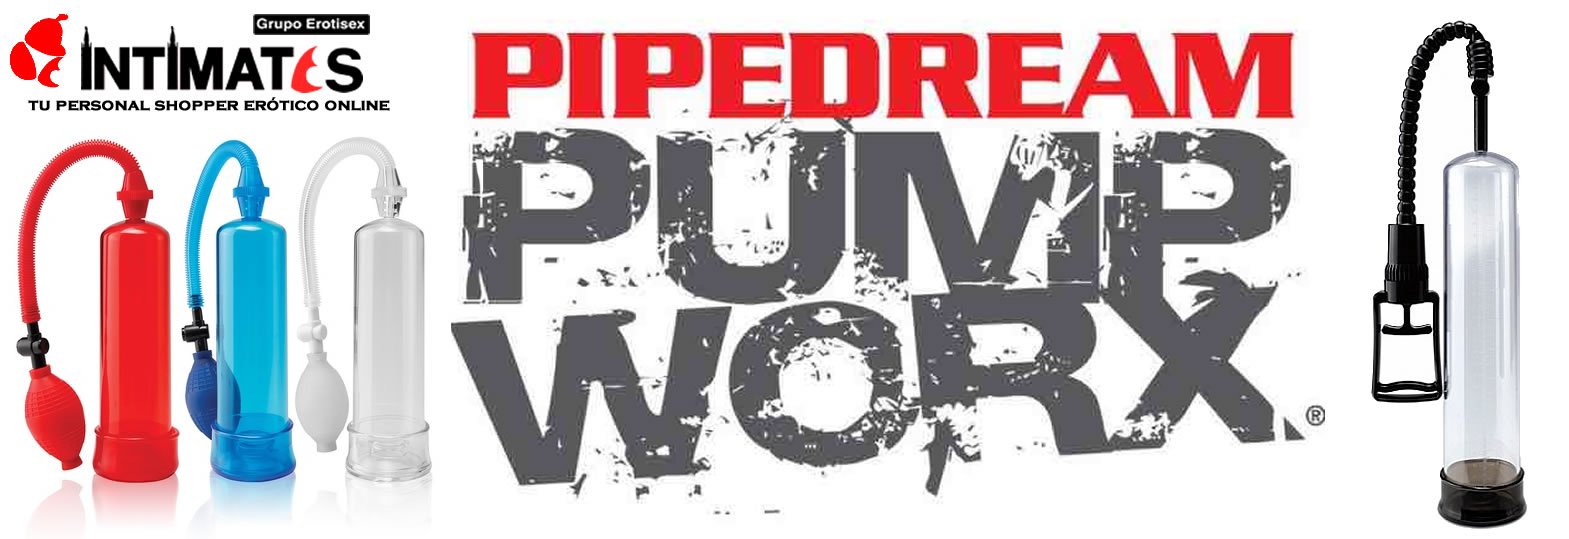 Pump Worx de Pipedream en intimates.es "Tu Personal Shopper Online"